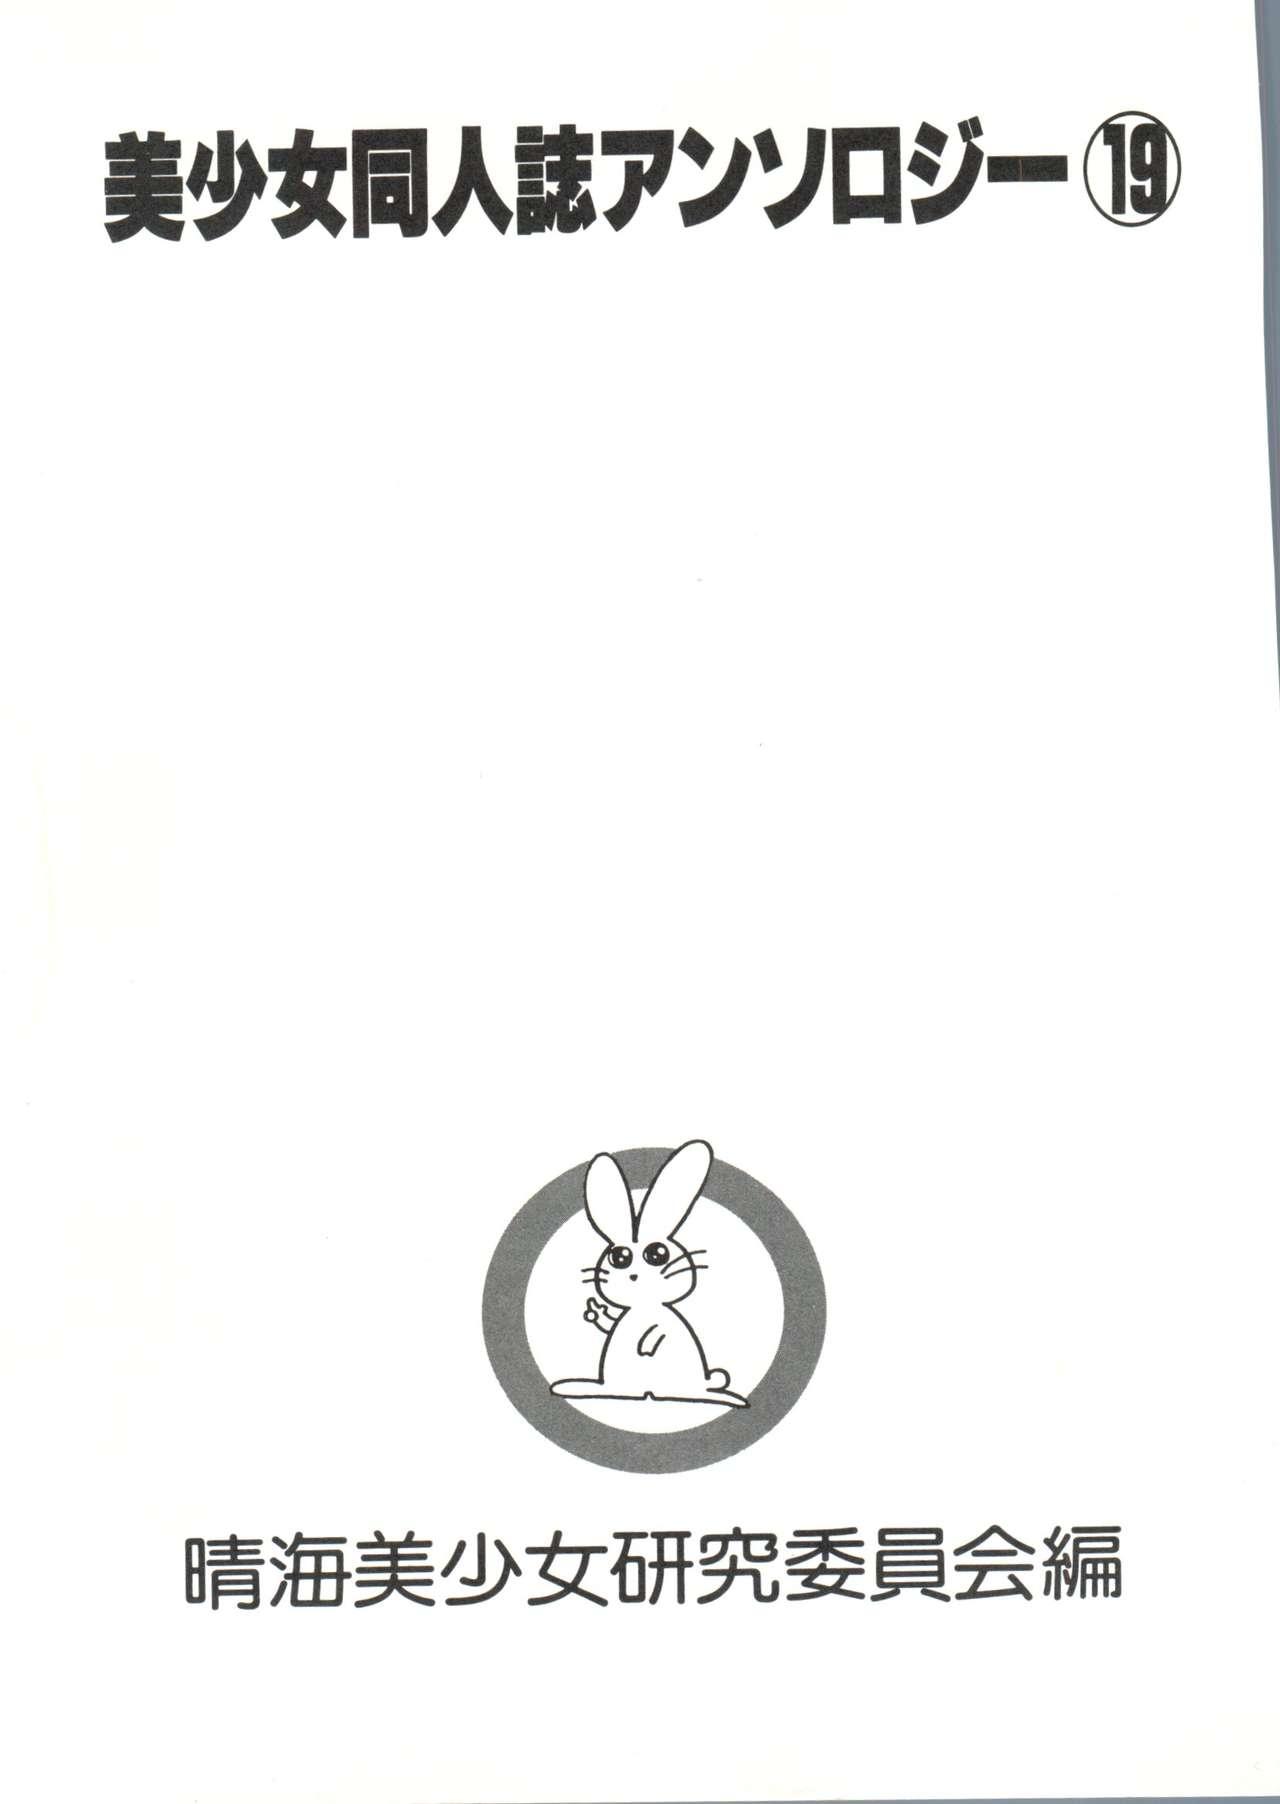 Bishoujo Doujinshi Anthology 19 4